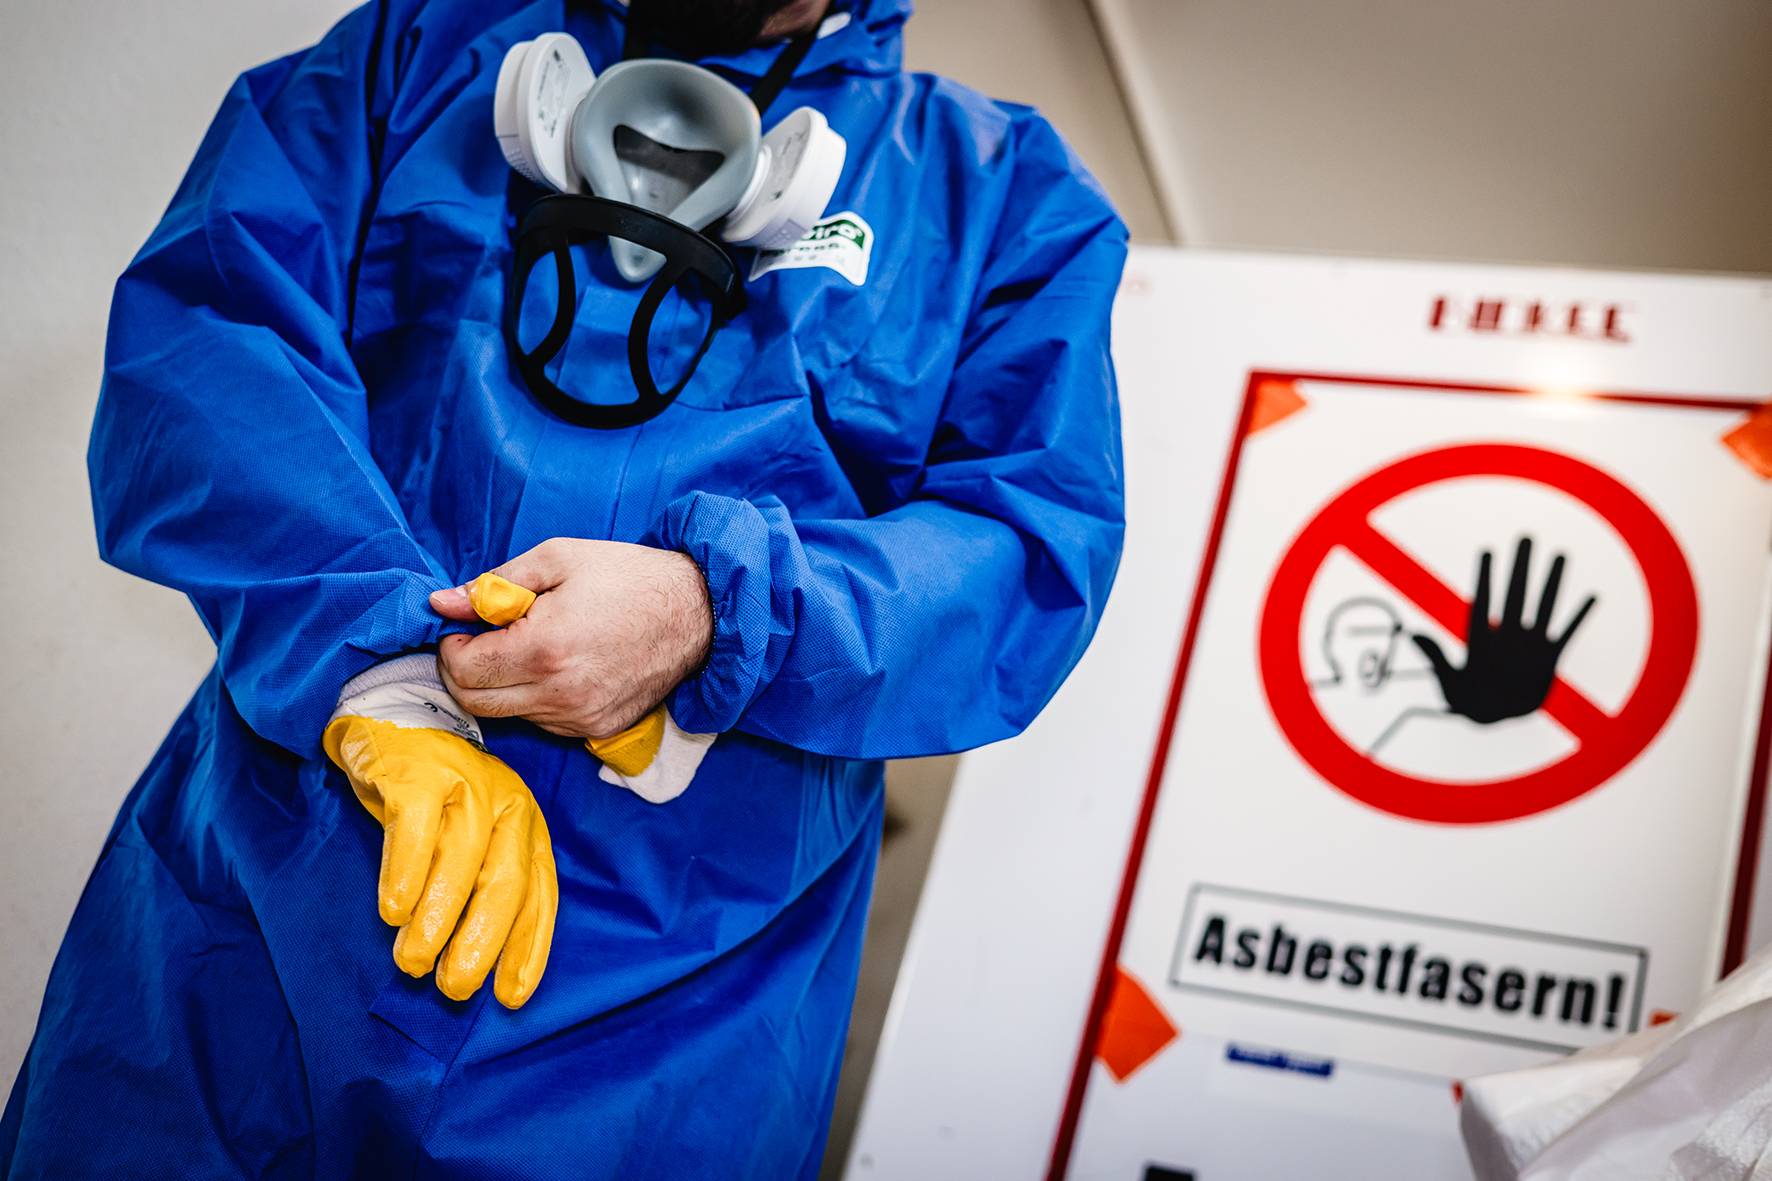 64.200 Wohnhäuser im Rhein-Kreis Neuss sind „Asbest-Fallen“